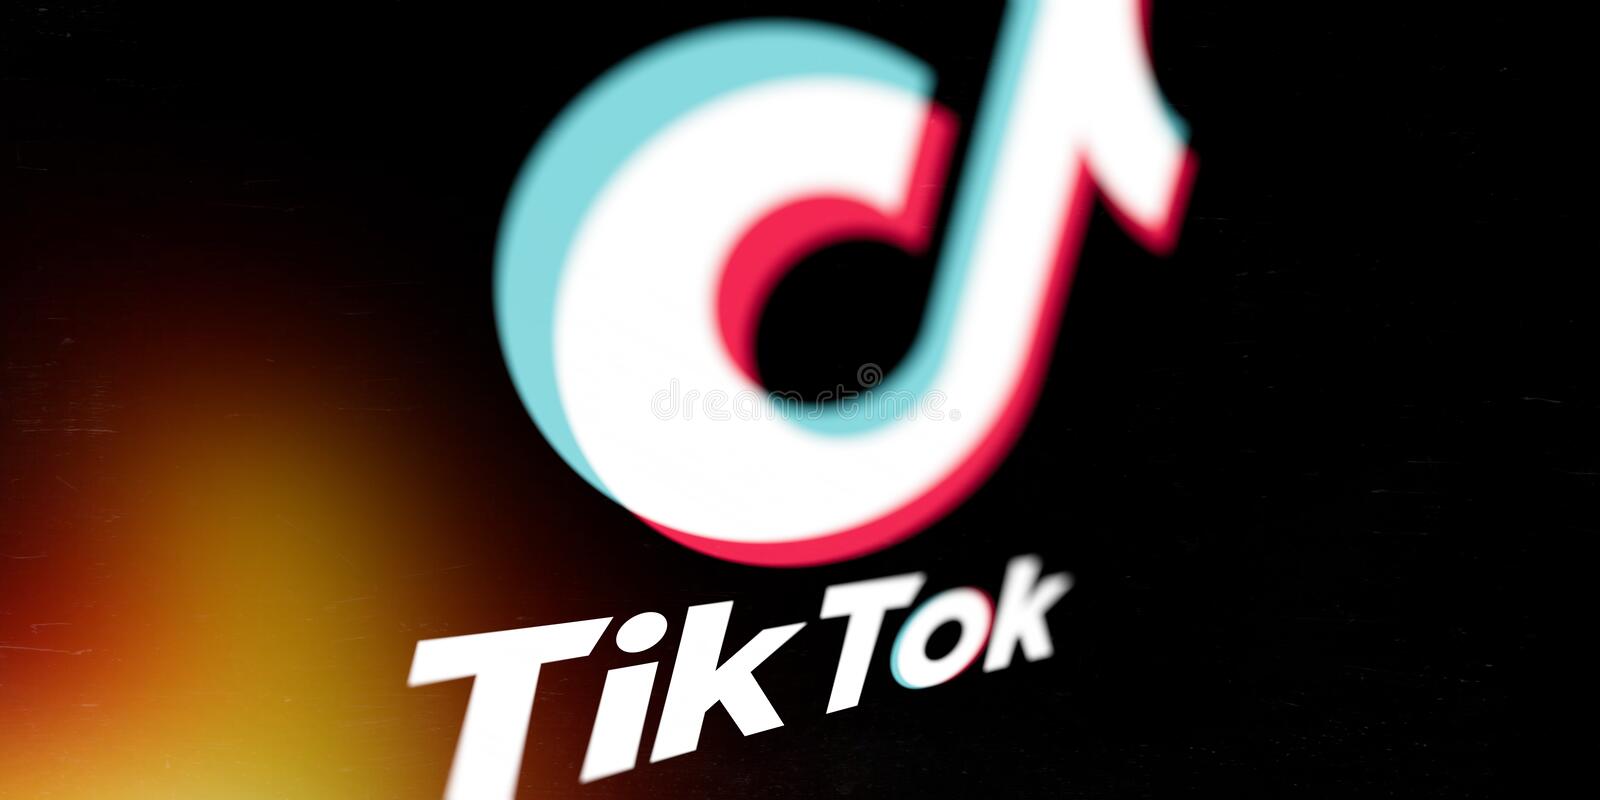 dvd logo unsatifying｜TikTok Search